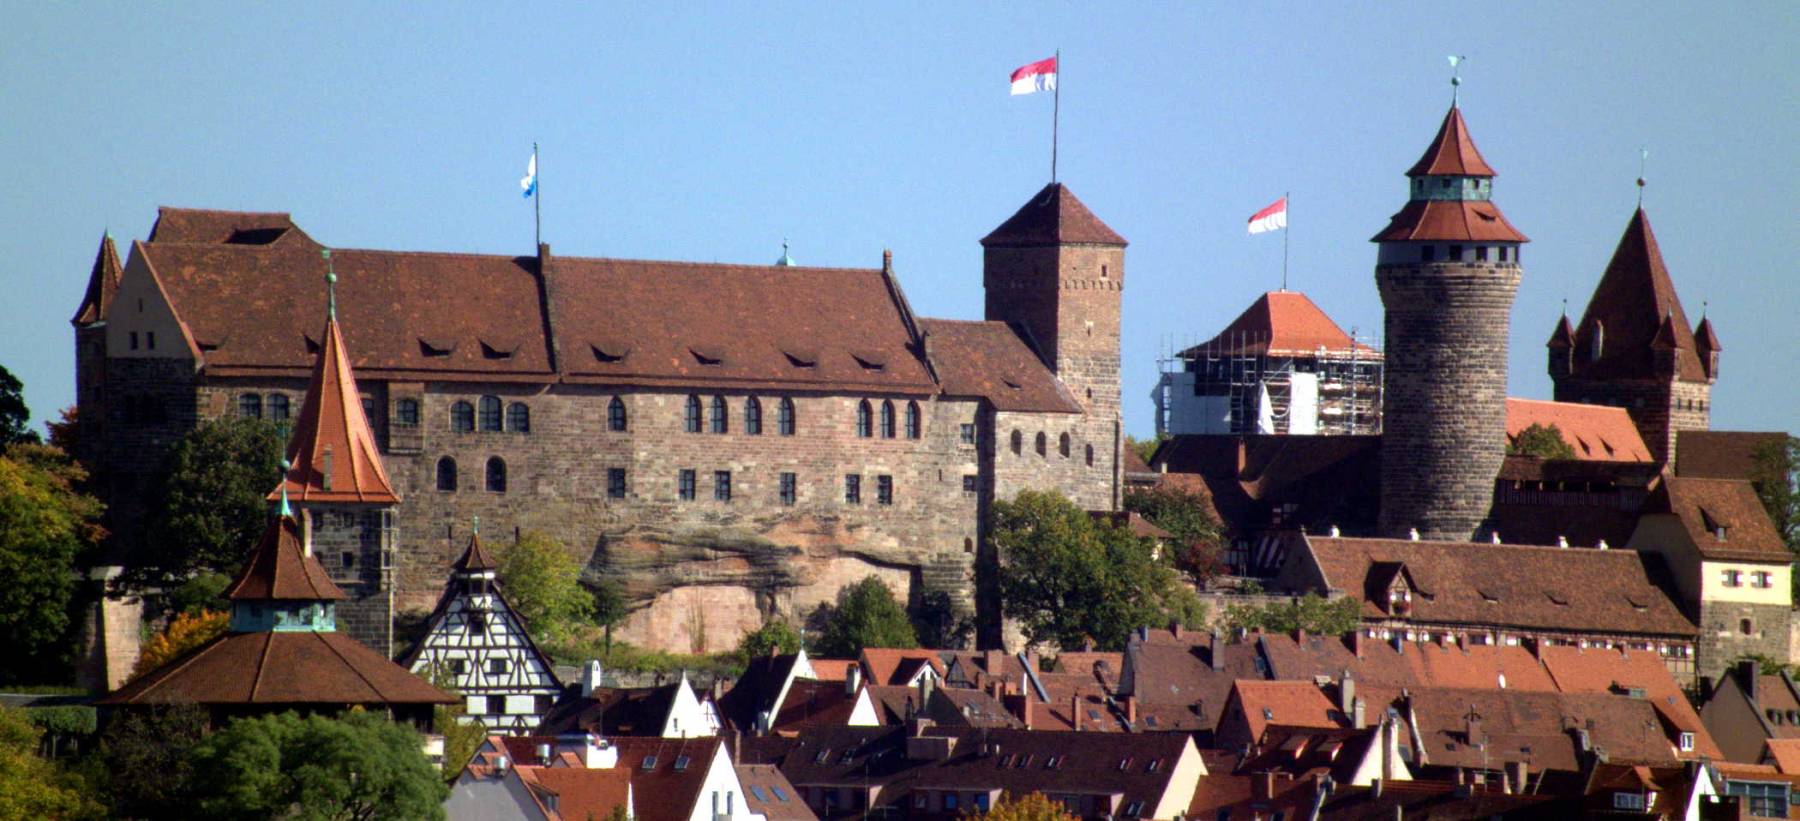 Burg N�rnberg 03 by DALIBRI